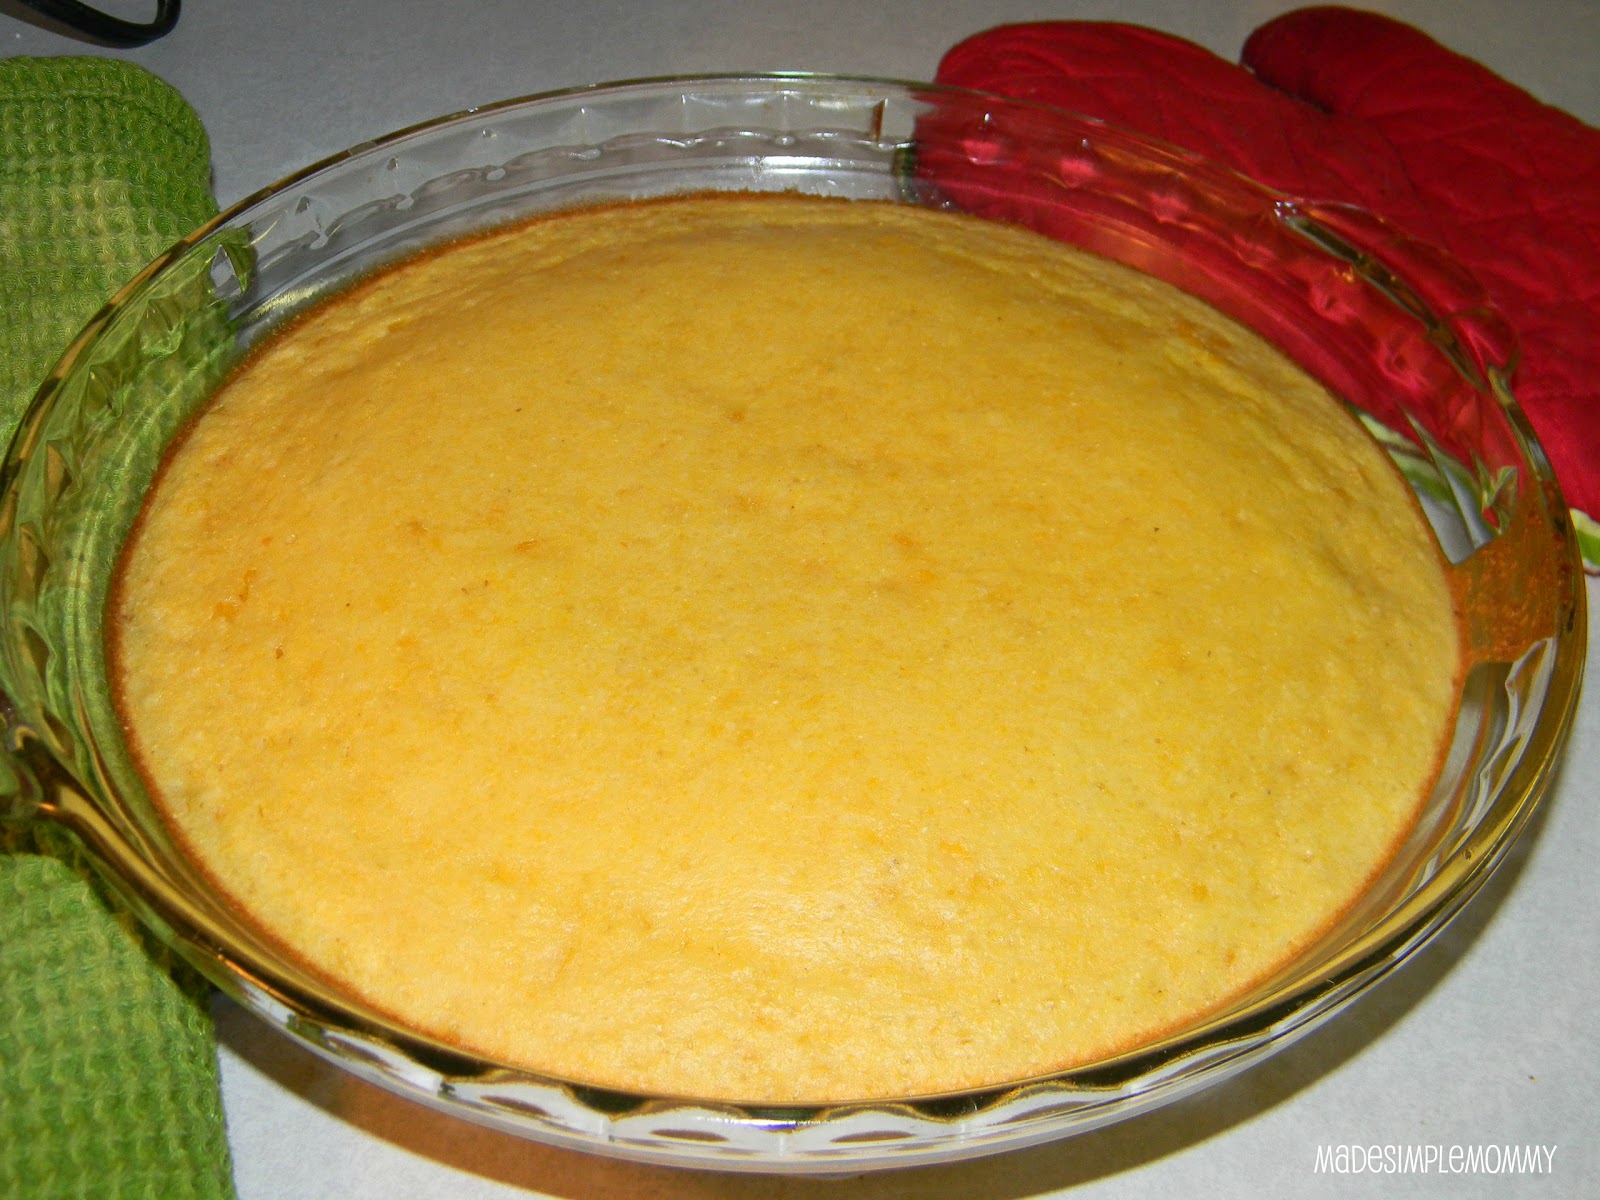 Jiffy Cornbread Creamed Corn Casserole